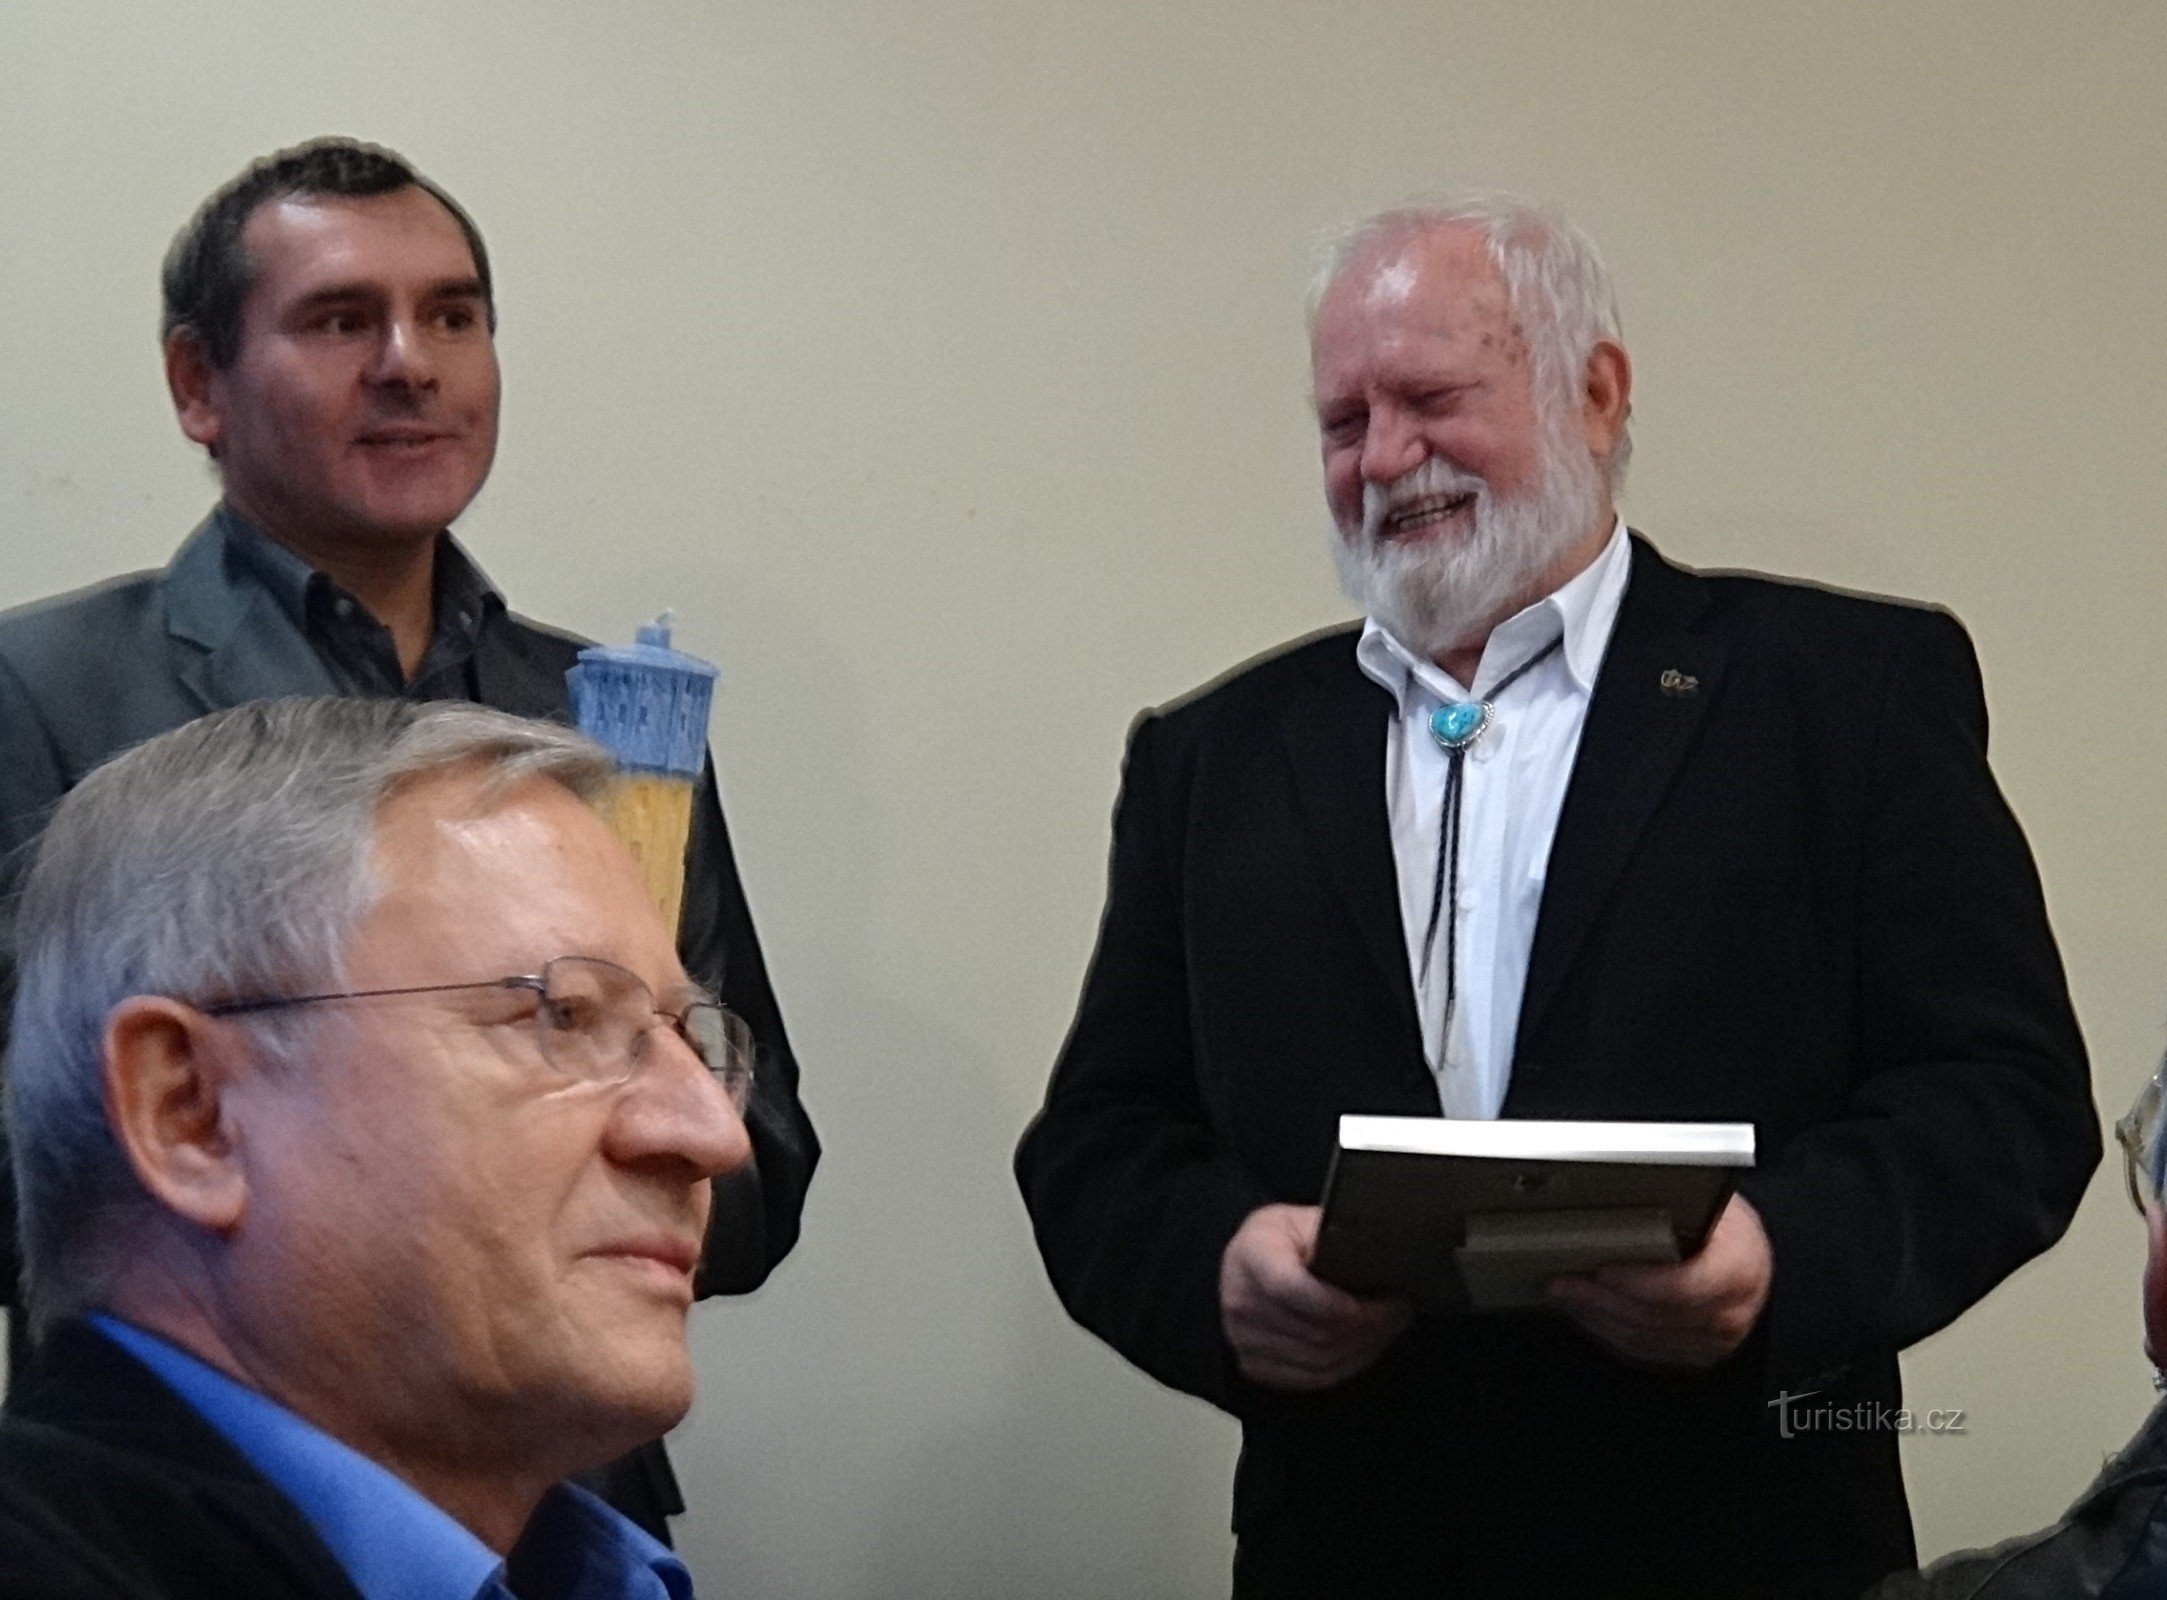 Richard Konkolski nhận giải thưởng tại tòa thị chính ở Bohumín